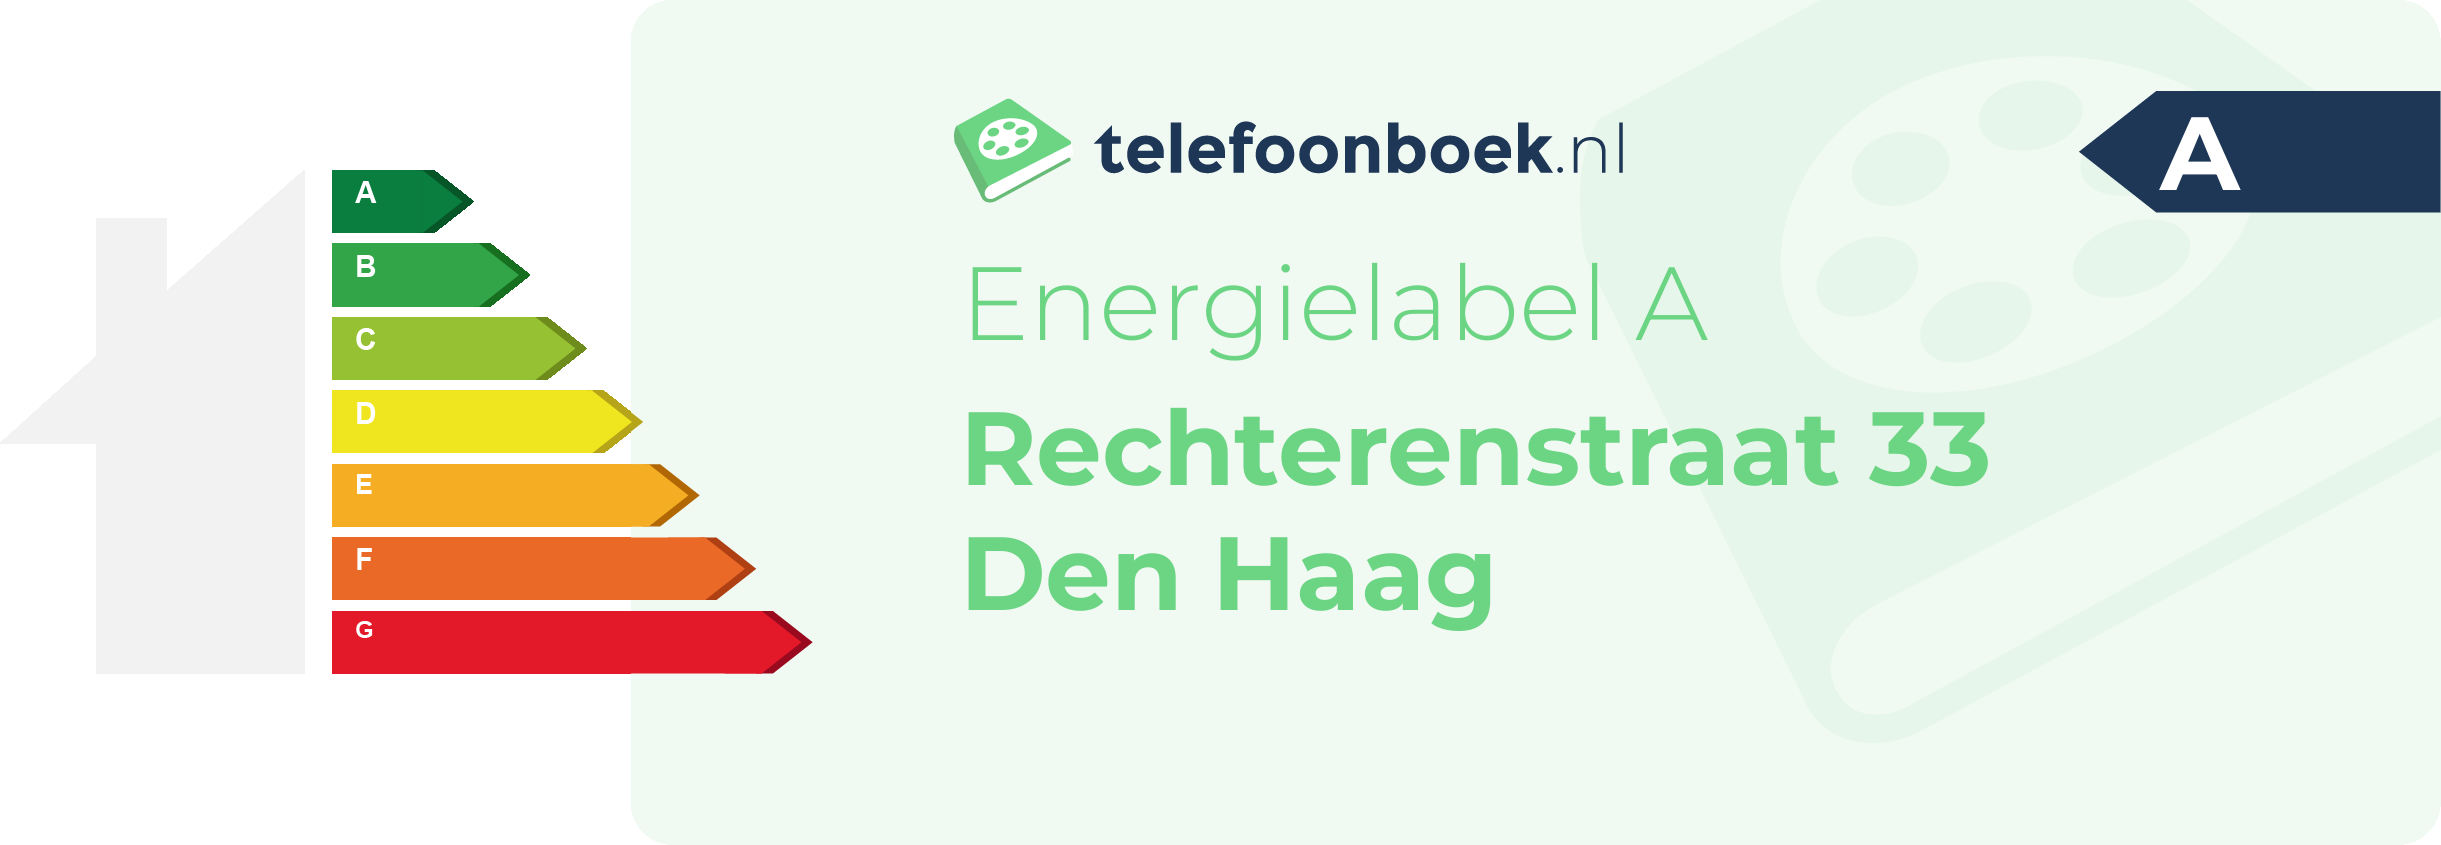 Energielabel Rechterenstraat 33 Den Haag